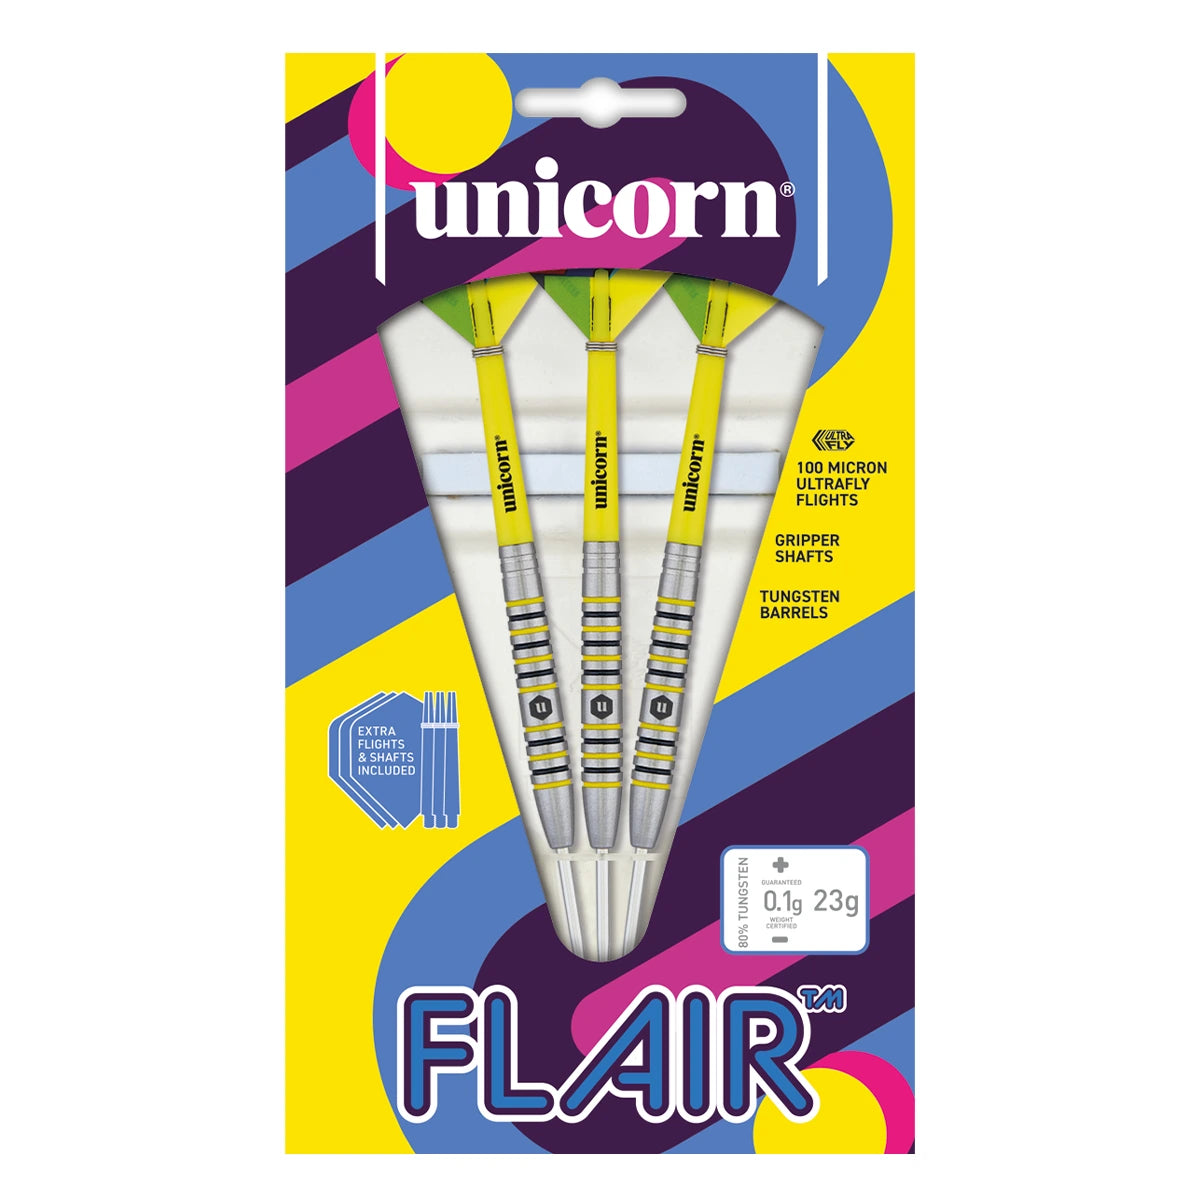 Unicorn Flair 80% Tungsten 23g Darts